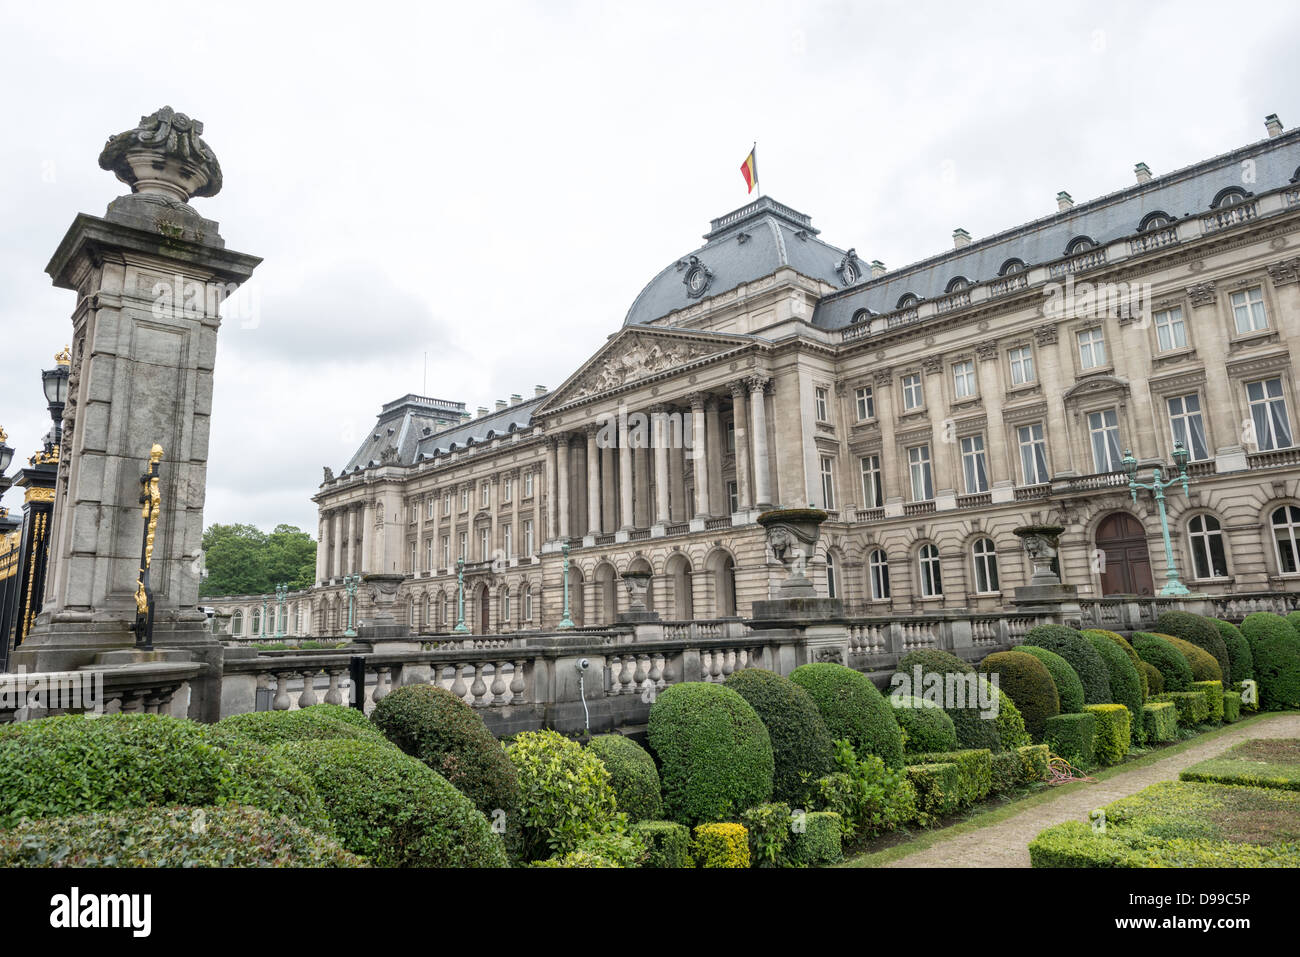 Brüssel, Belgien - auf der Vorderseite des Hauptgebäudes der Königliche Palast von Brüssel, die offizielle Palast der Königlichen Familie. Stockfoto